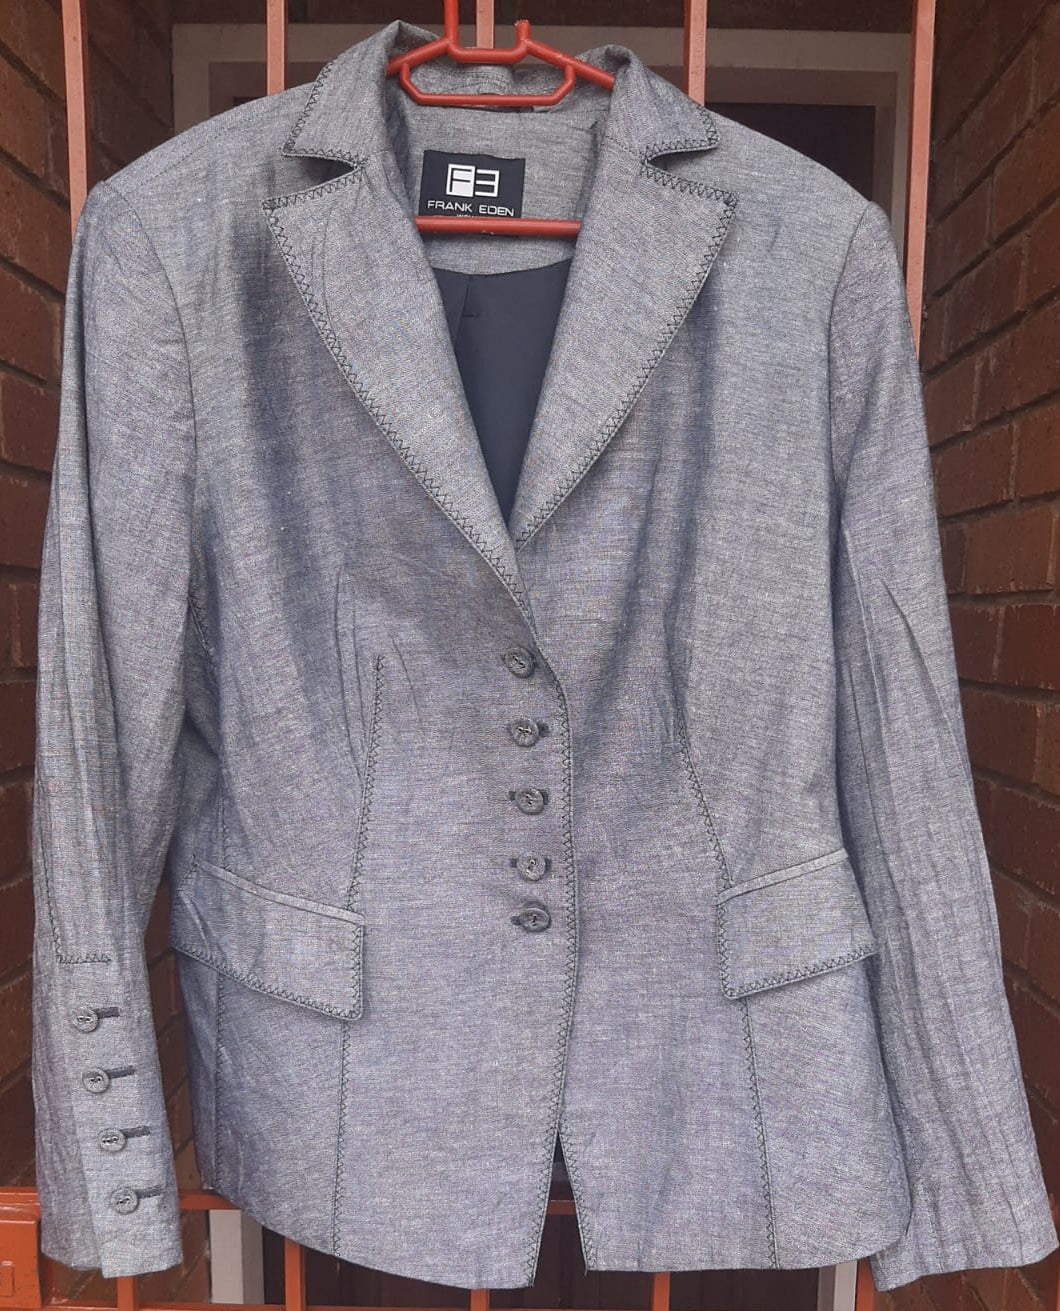 Grey formal jacket